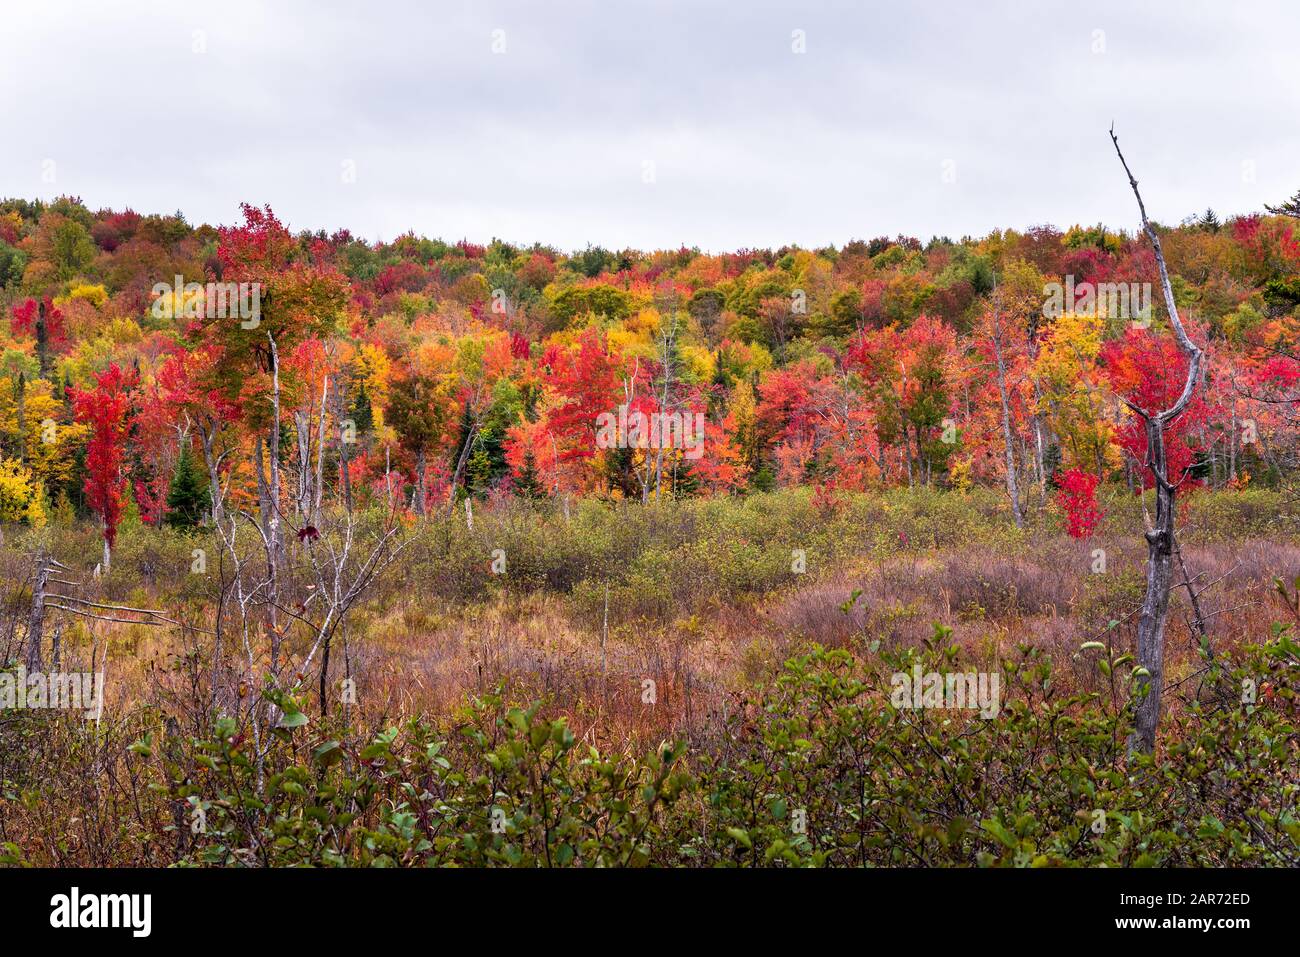 Hügel bedeckt von bunten Bäumen während der Herbst-Farbsaison an einem bewölkten Tag Stockfoto